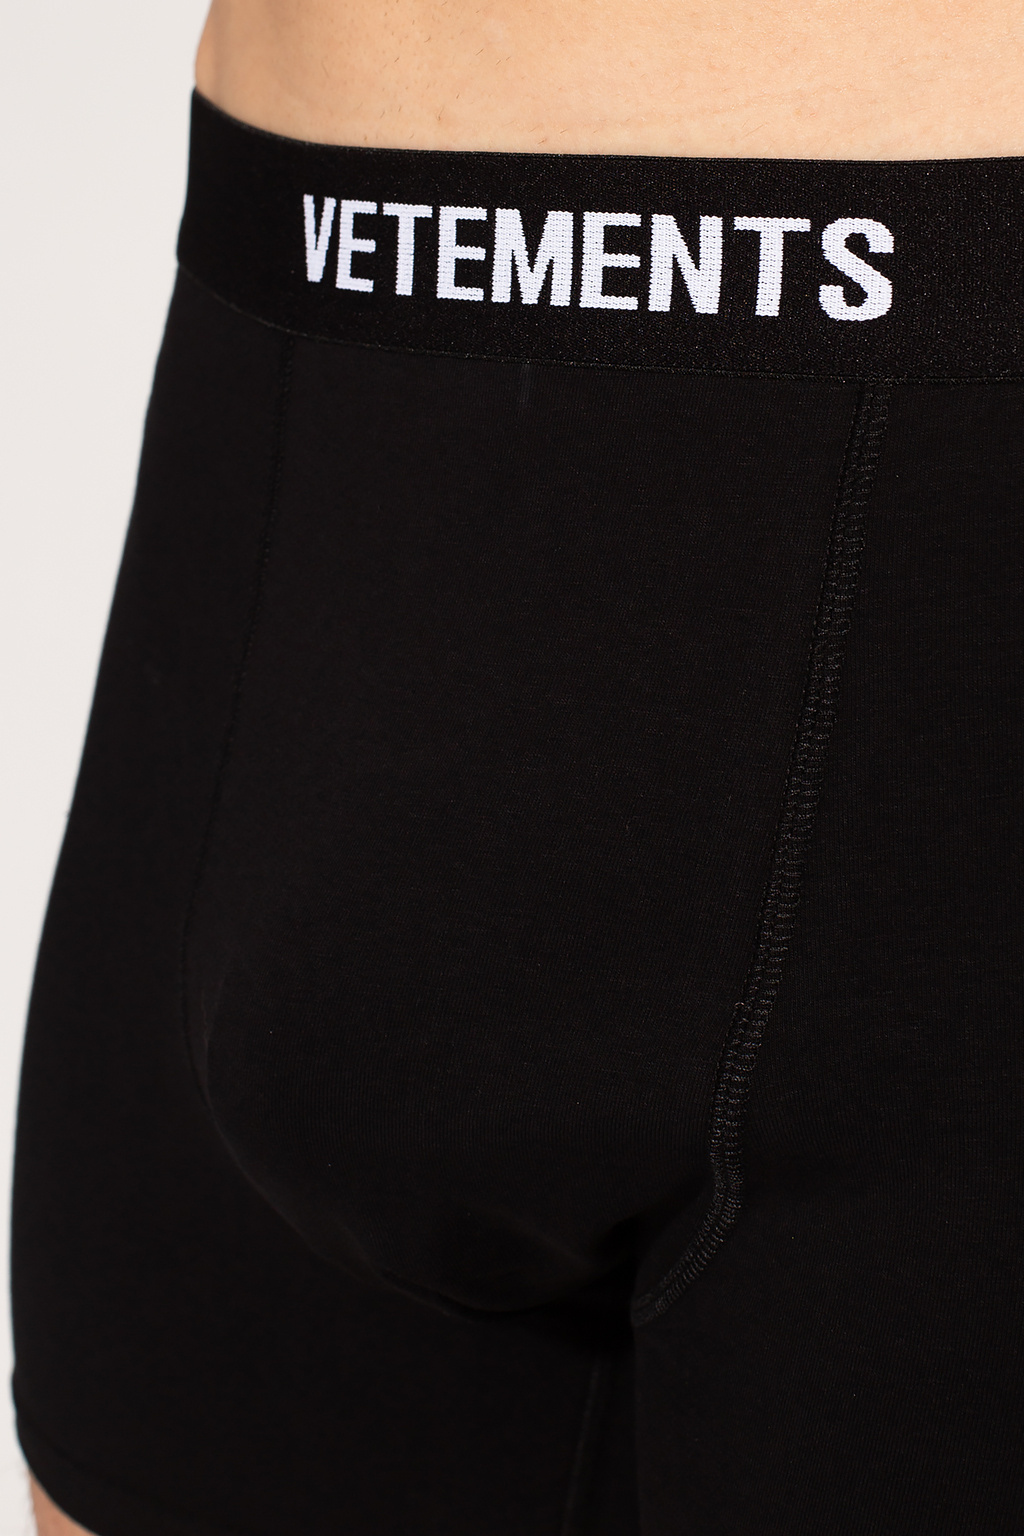 GG LV Louis Vuitton Men Briefs Shorts Underpants Male Cotton Underwear